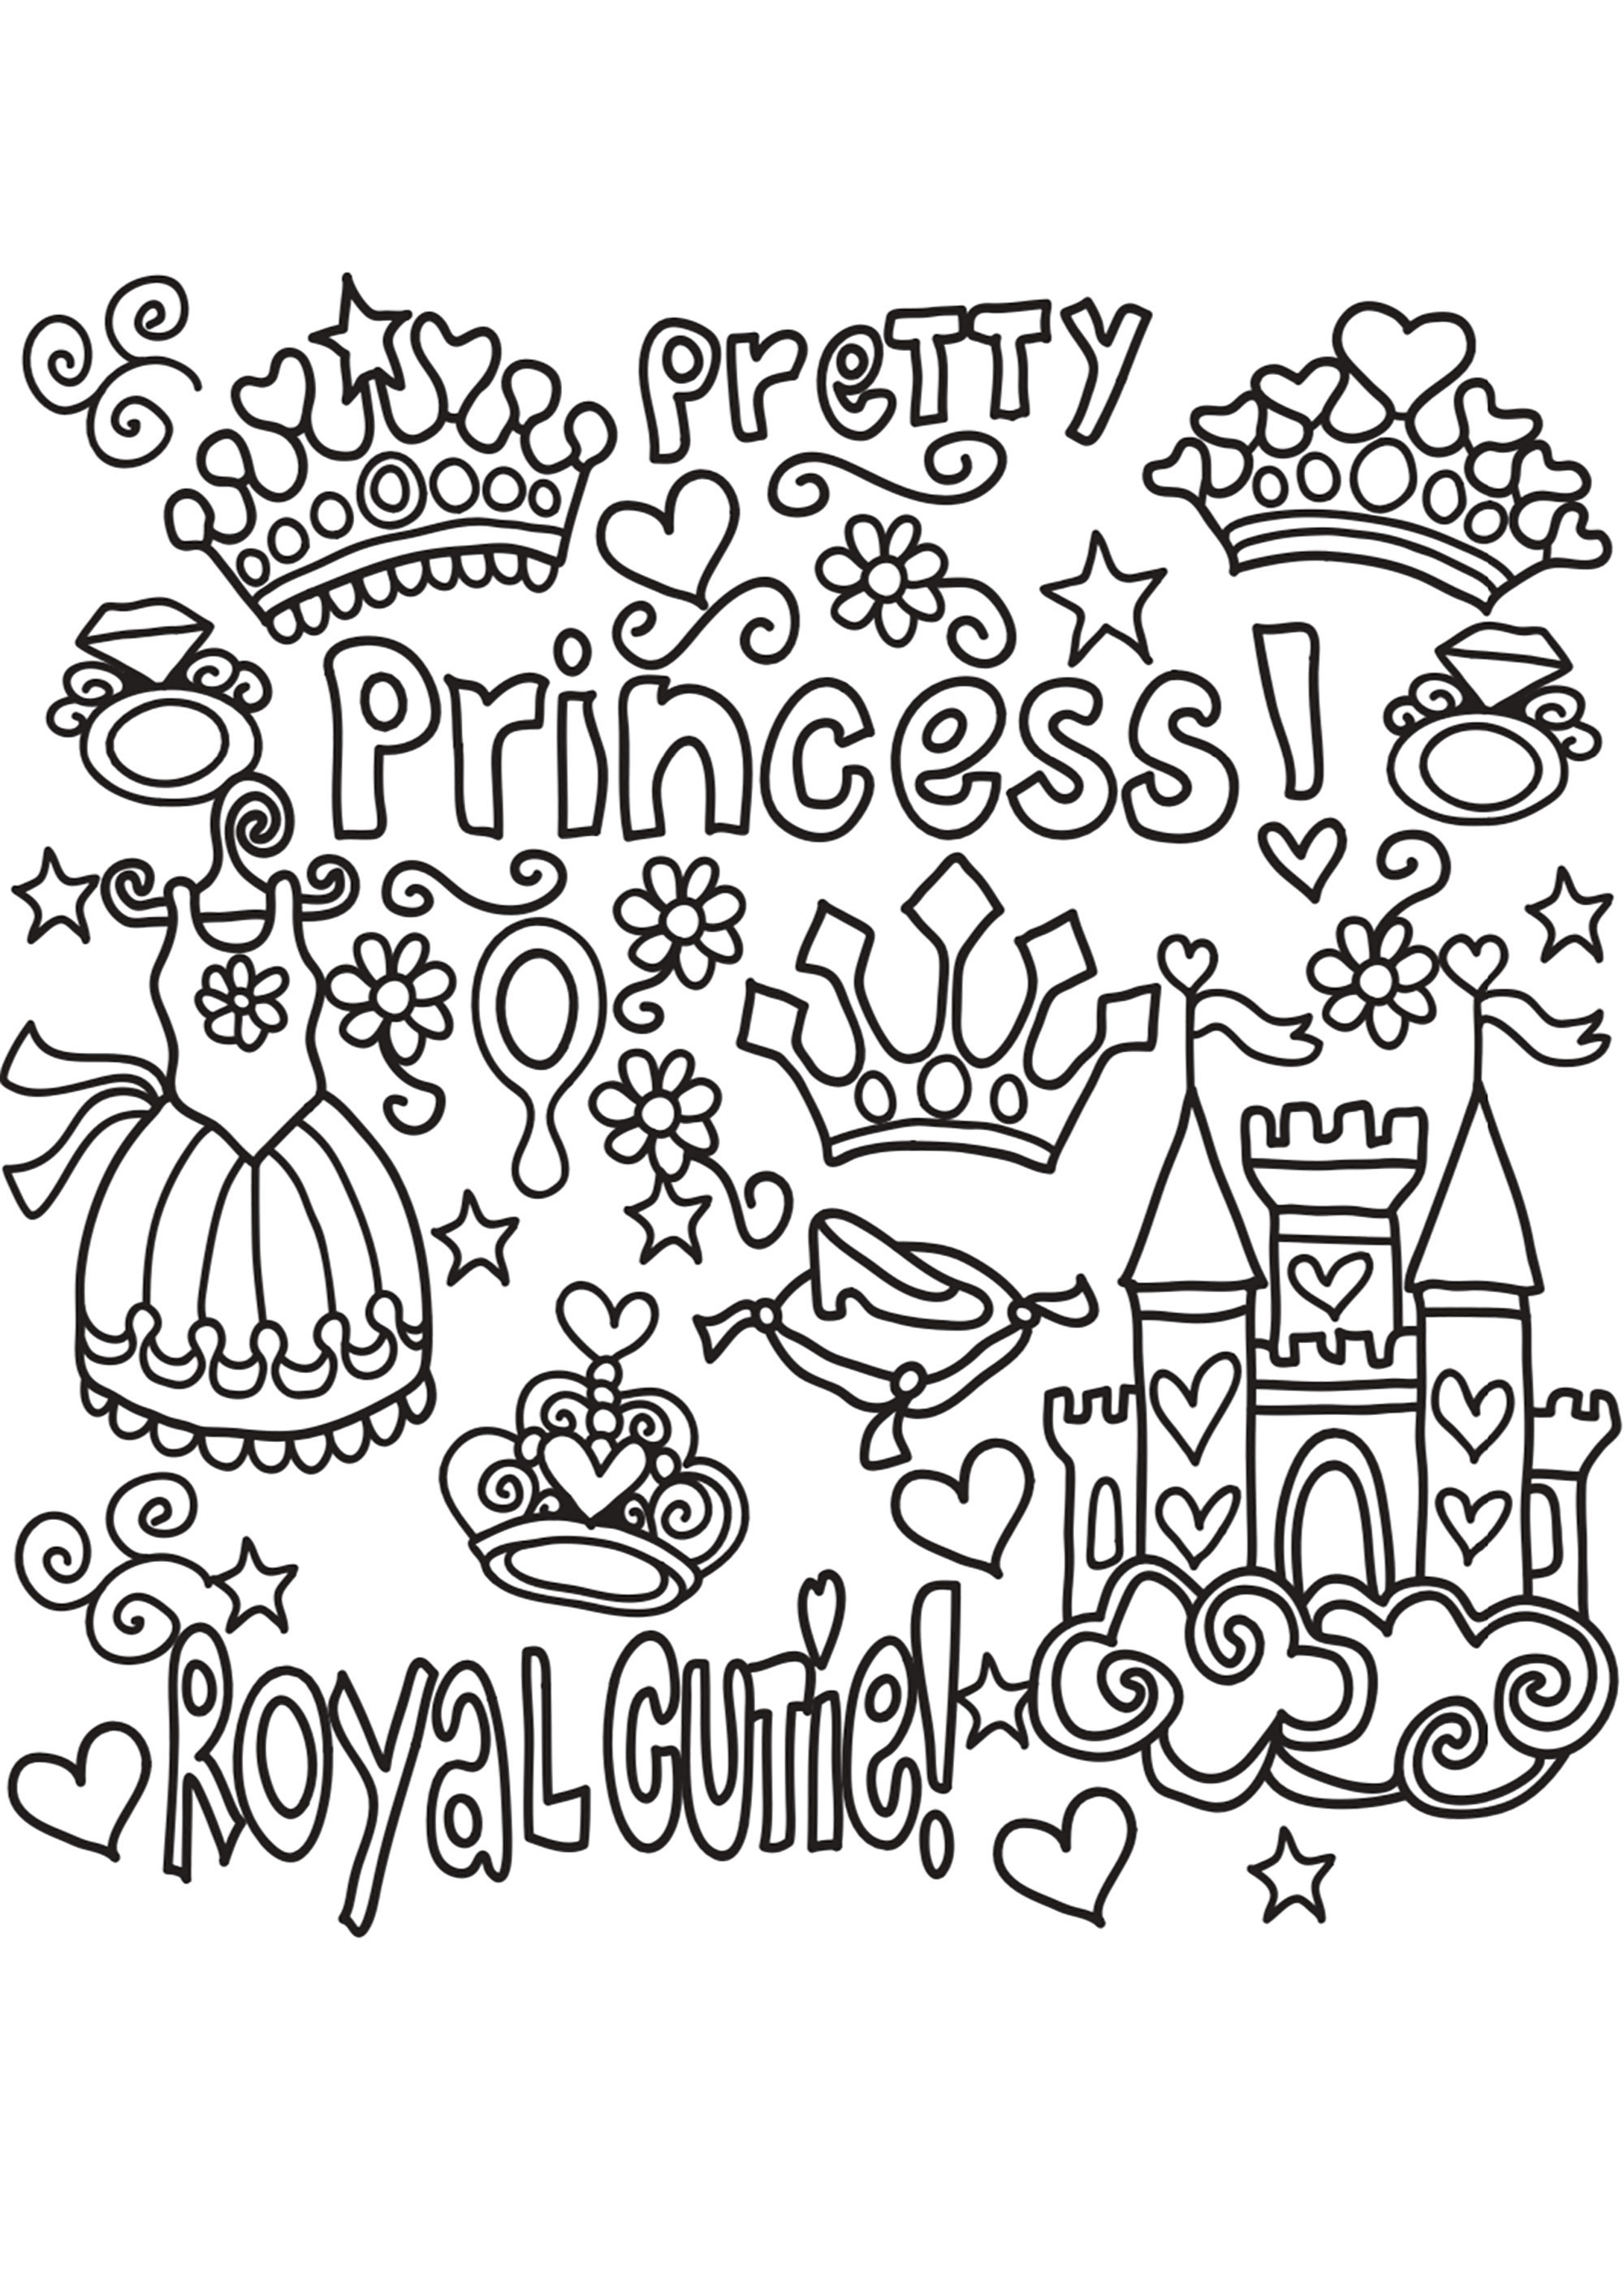 Um bonito rabisco com tema de princesa. Um vestido de princesa, uma tiara, uma coroa, um castelo... e palavras bonitas... tudo para a levar para um reino encantado.